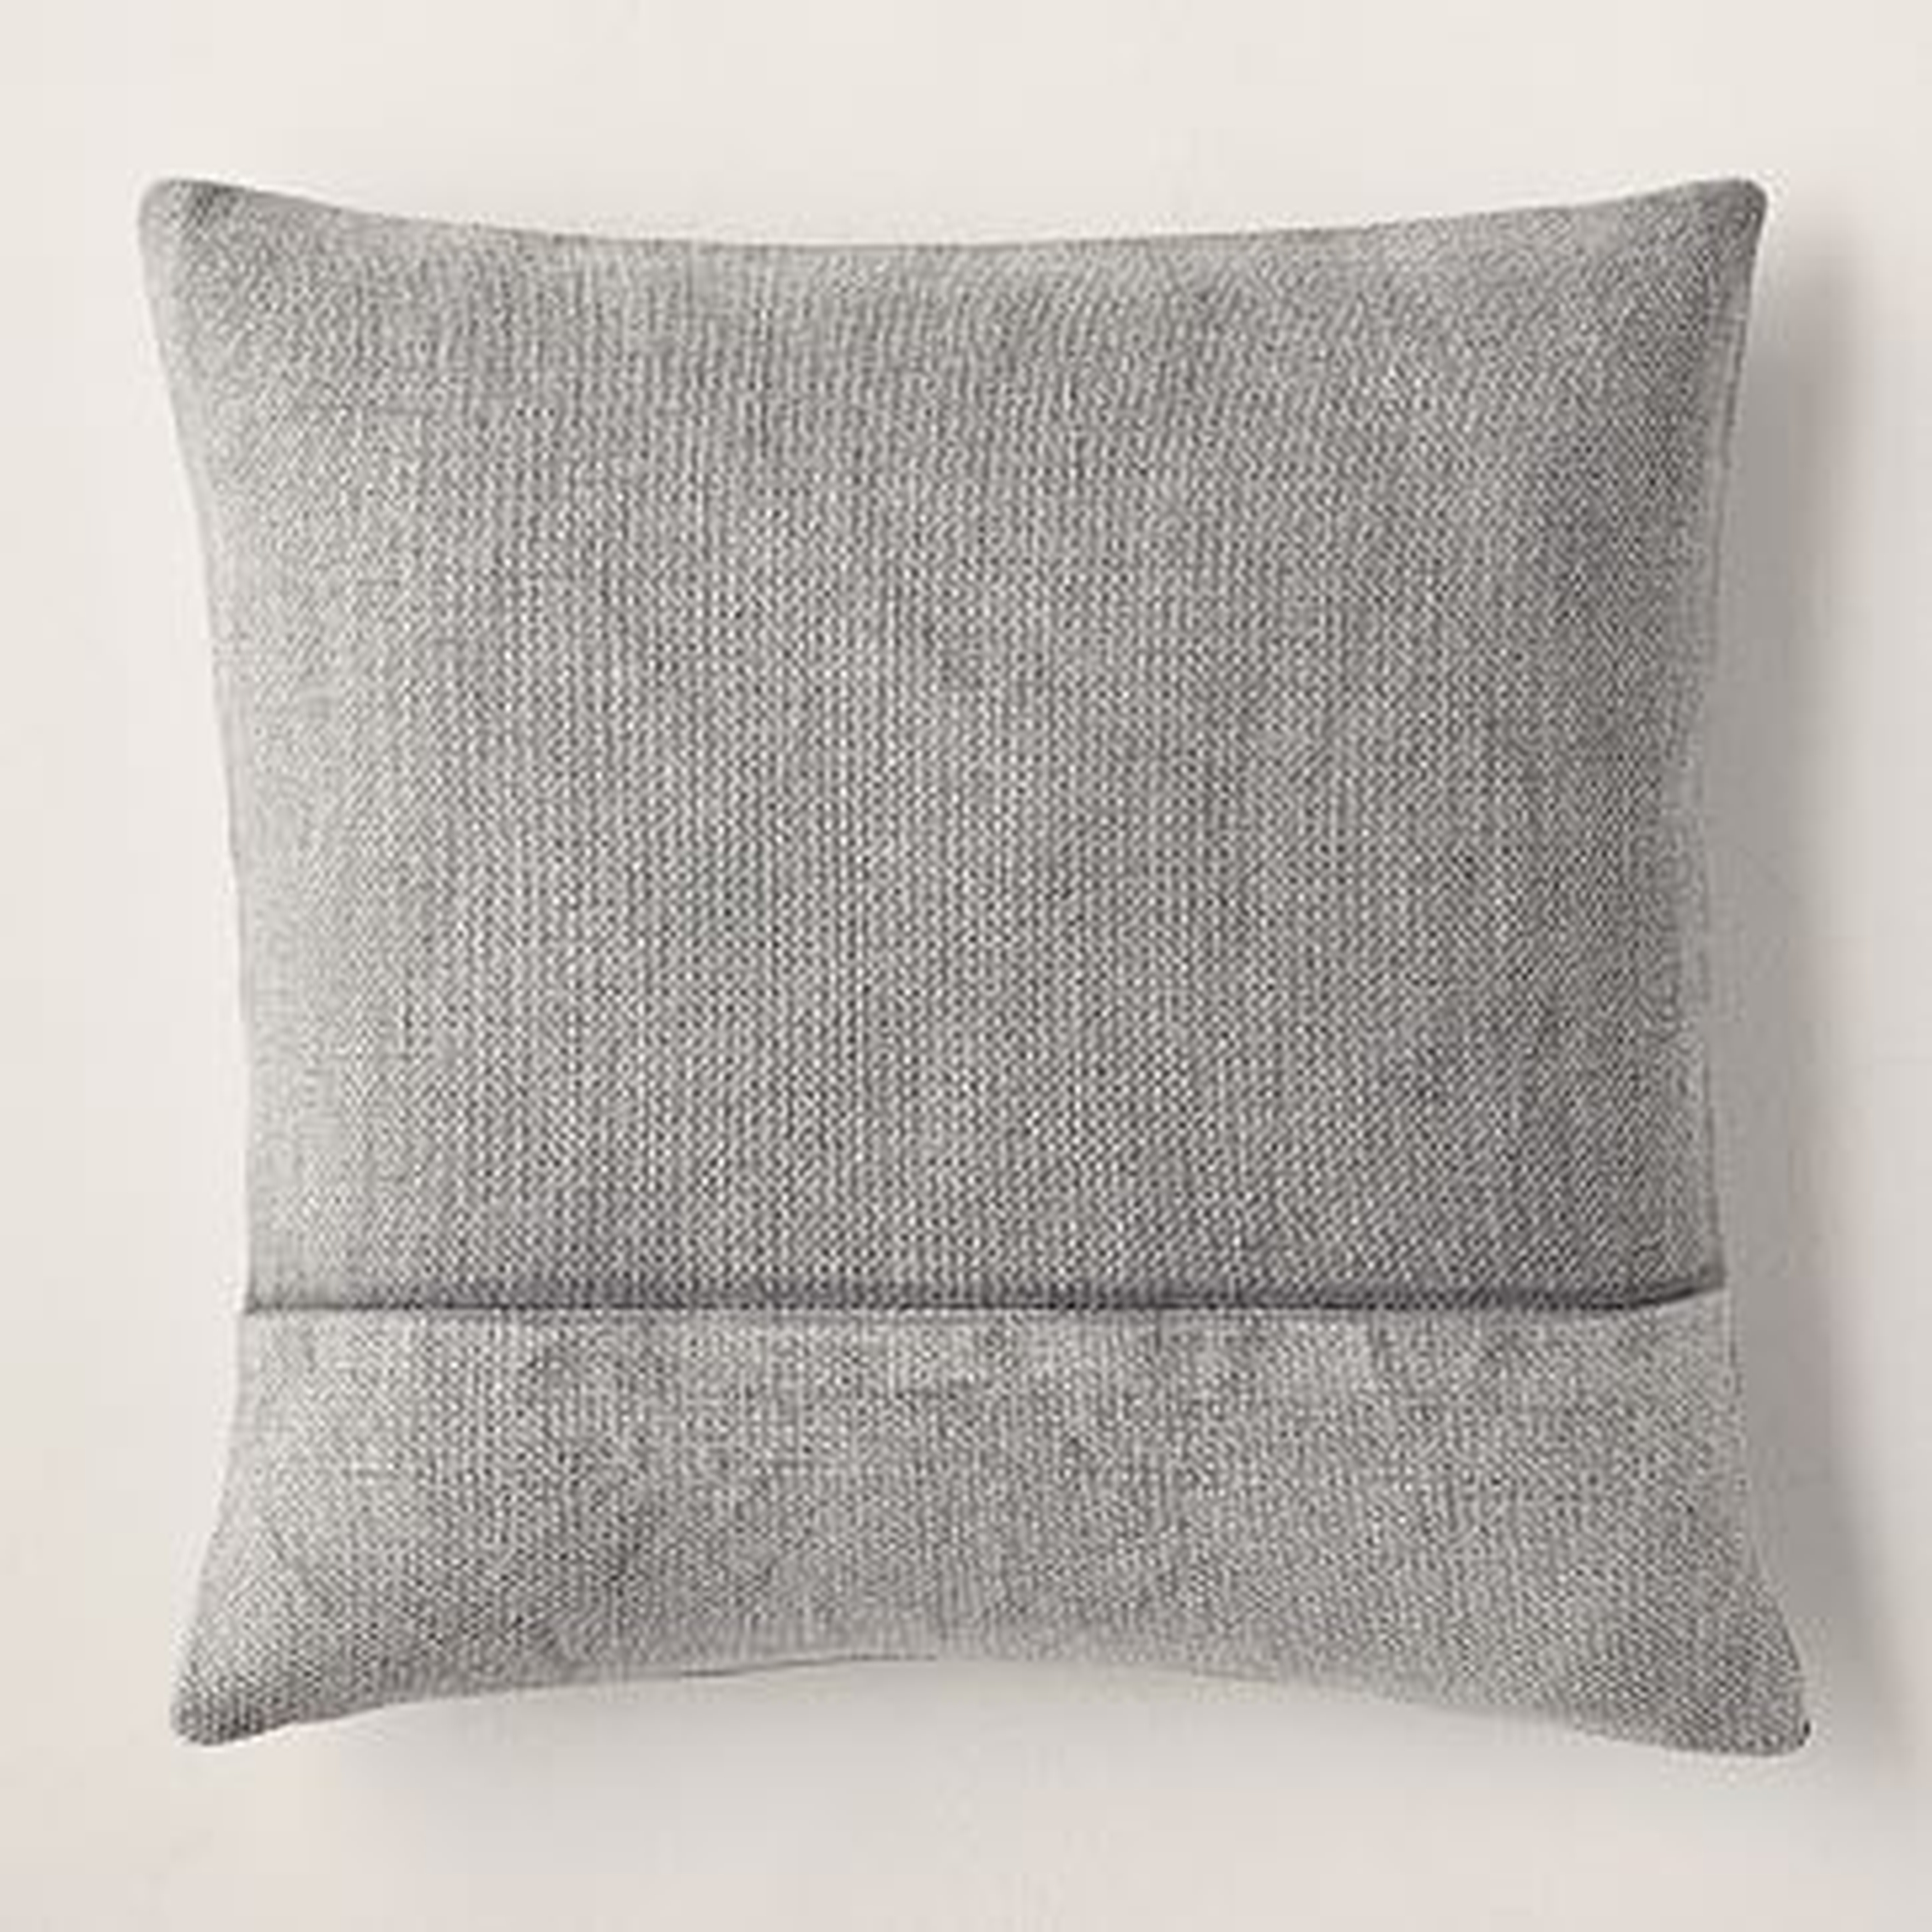 Cotton Canvas Pillow Cover, 18"x18", Iron, Set of 2 - West Elm